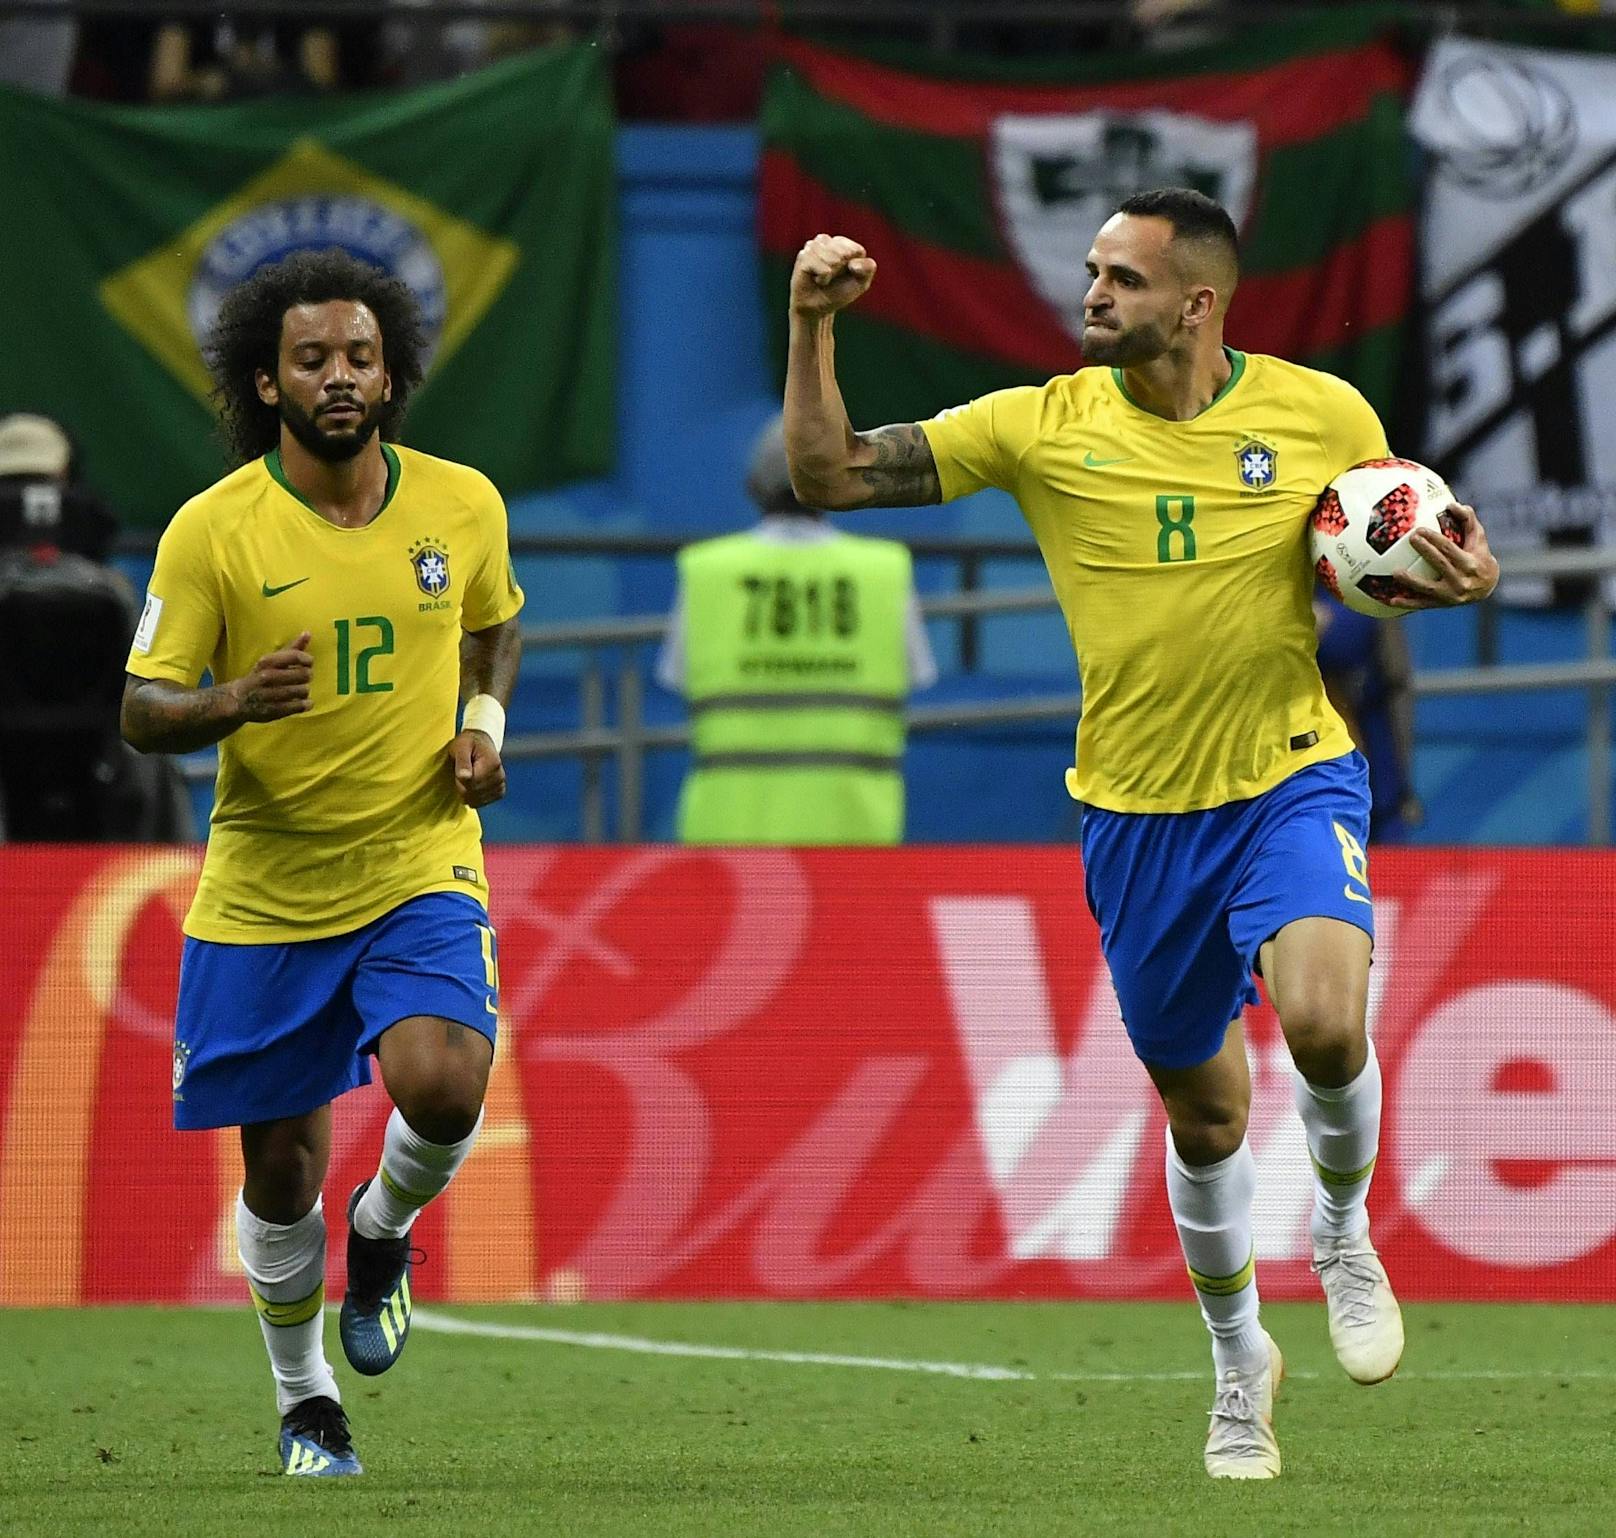 Die meisten erzielten Tore insgesamt: Brasilien mit 229 Treffern.